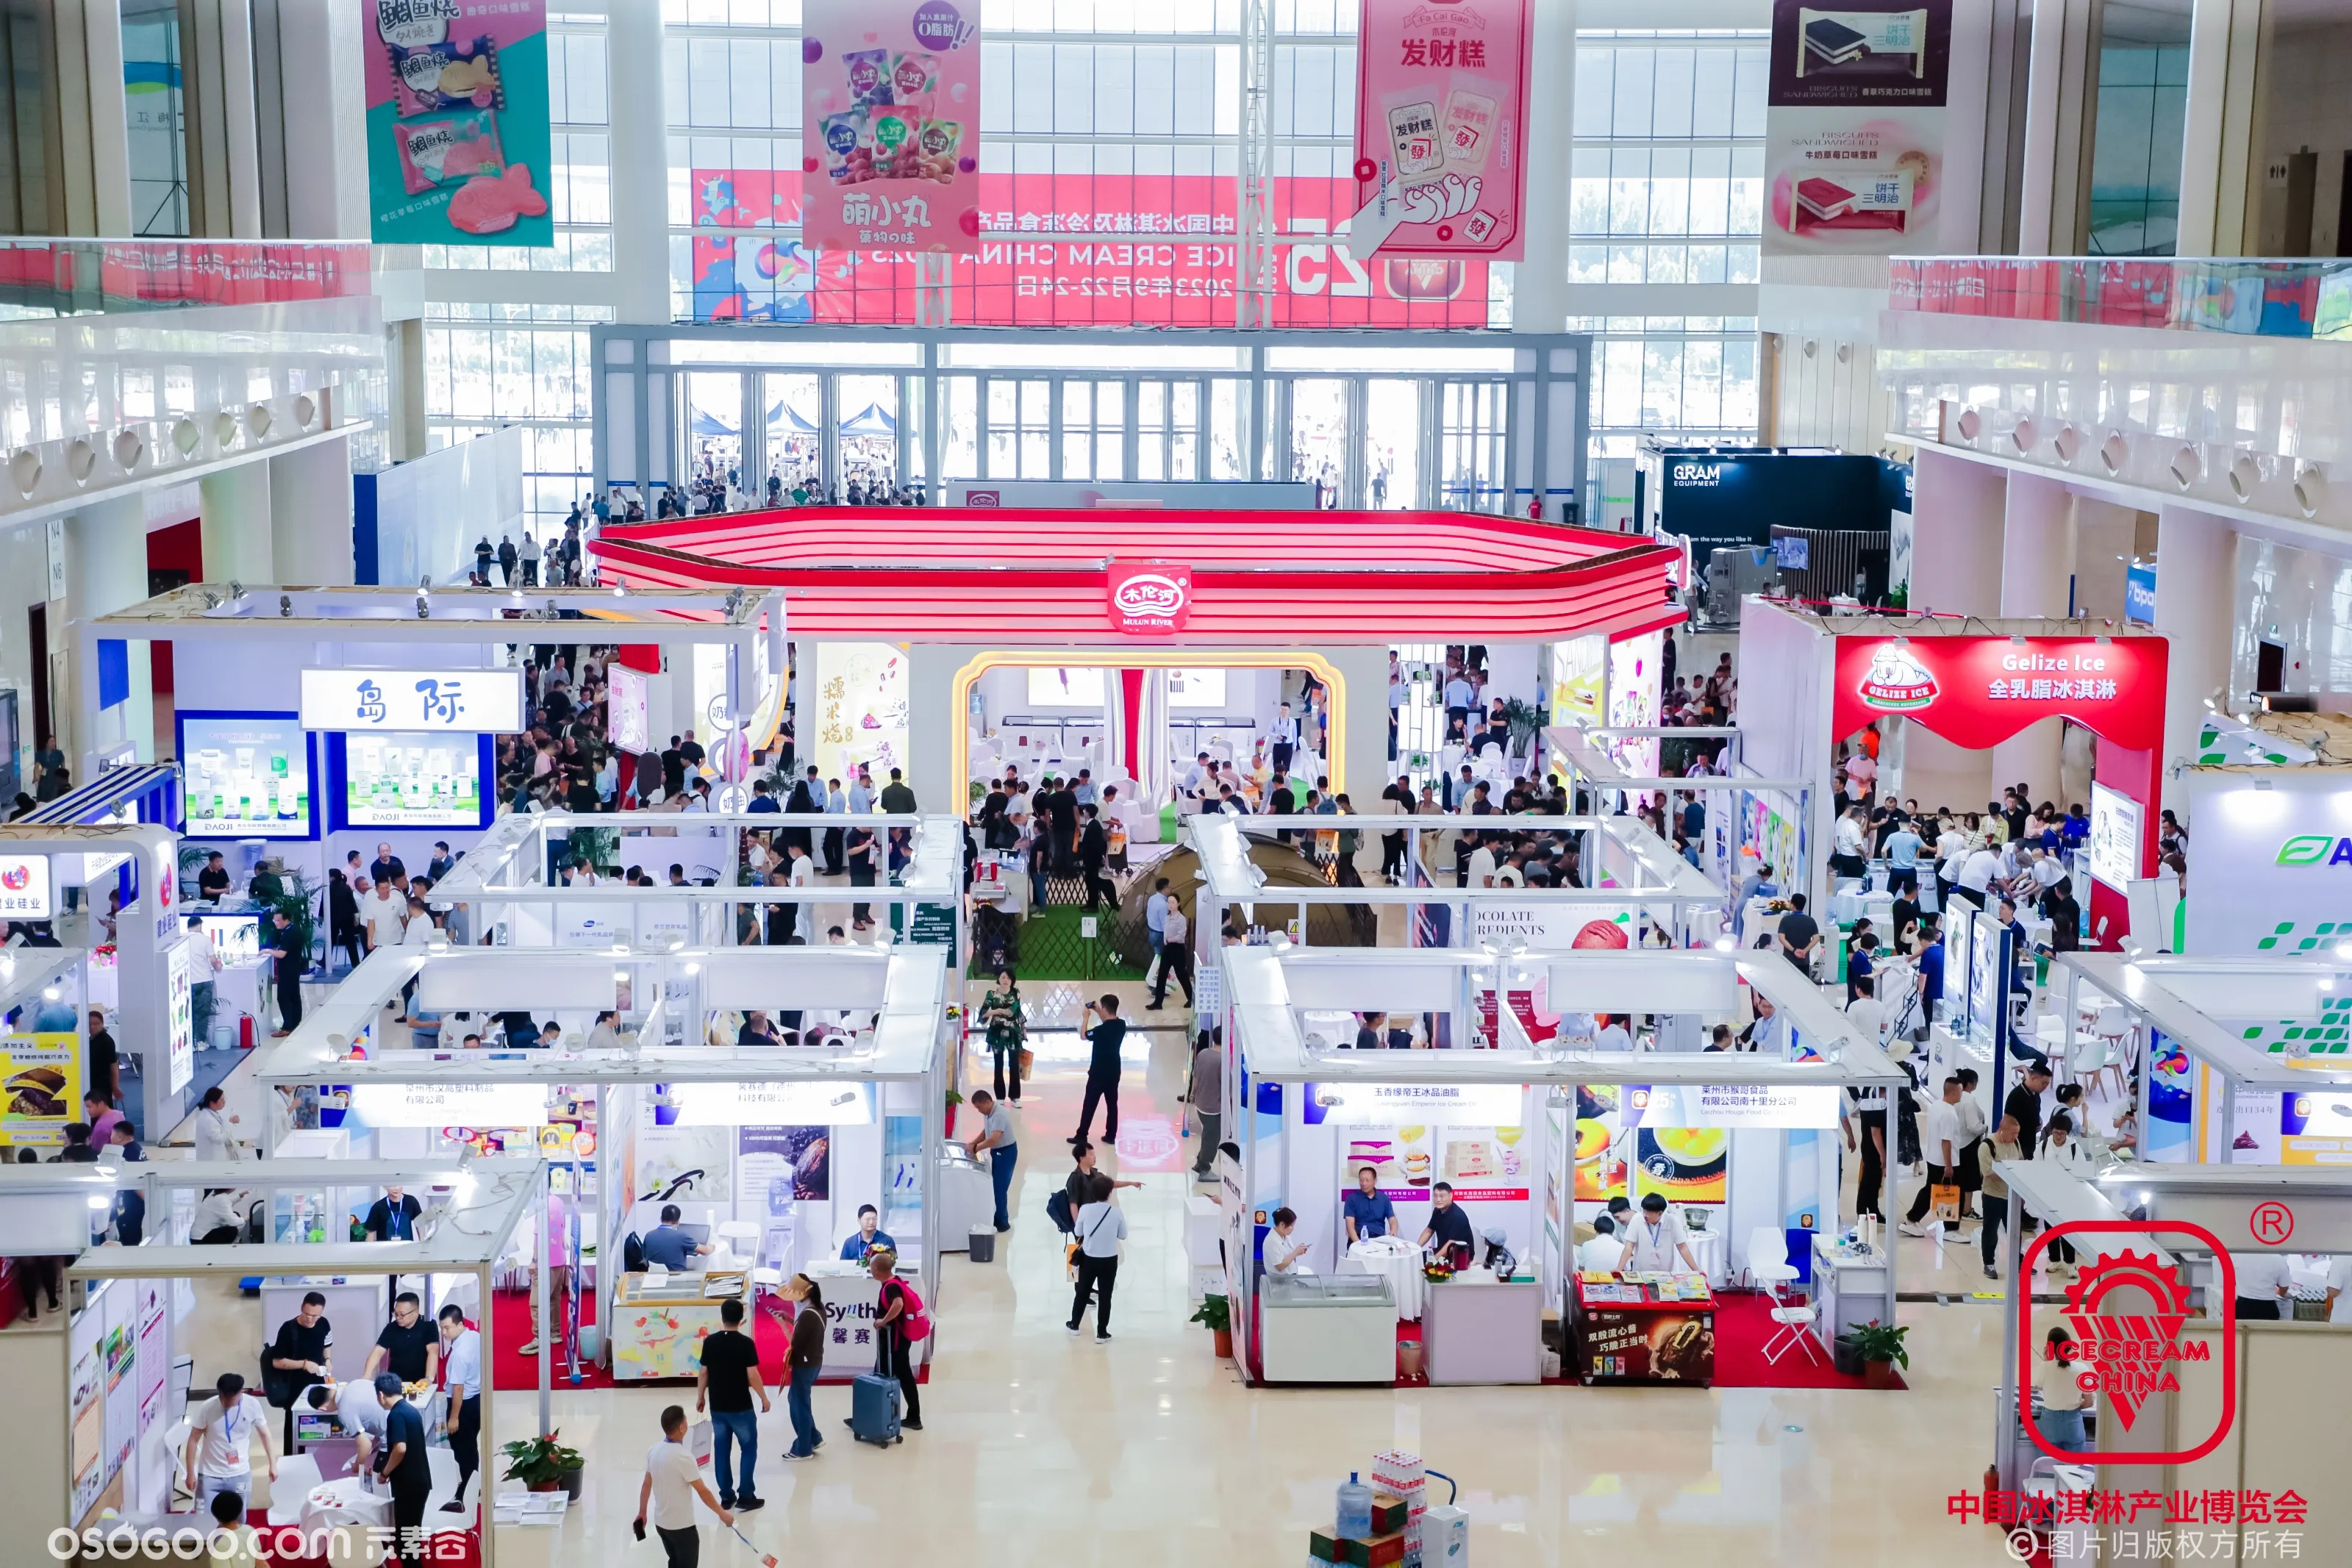 第25届中国冰淇淋及冷冻食品产业博览会